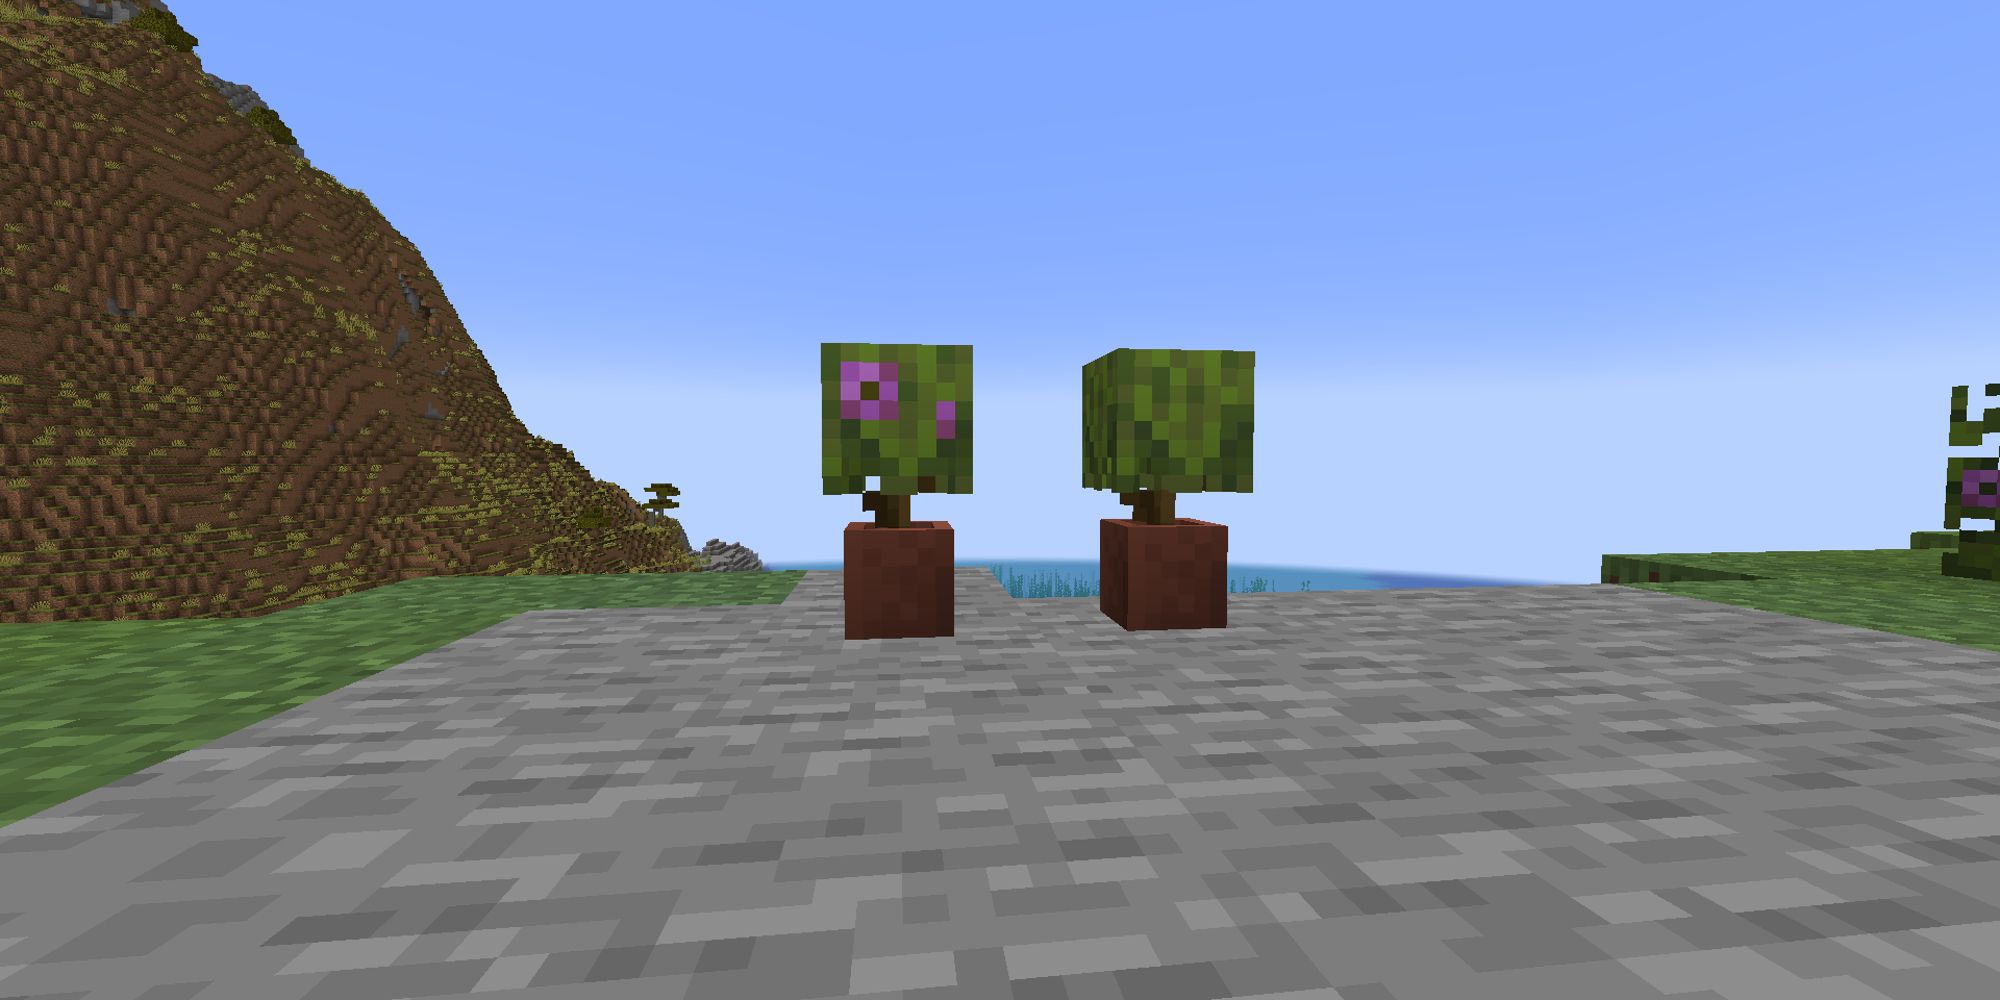 two azaleas planted in flowerpots